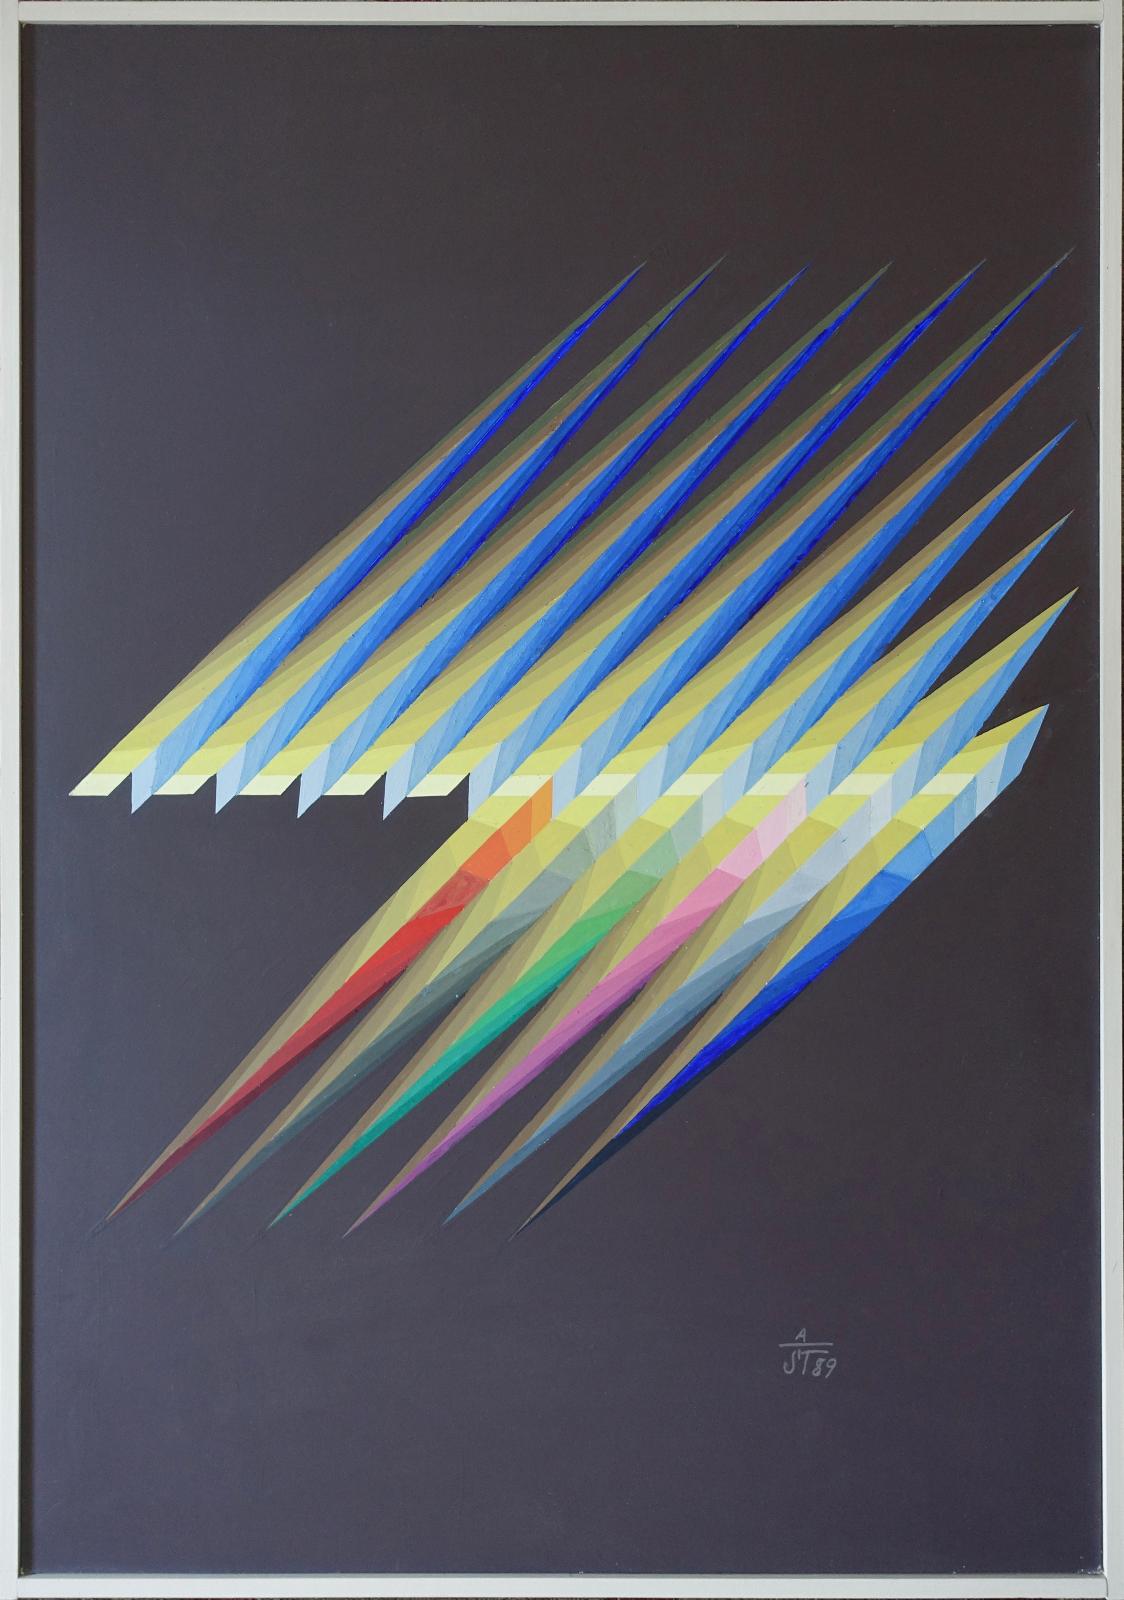 Anton Stankowski, 1989, Bildmaß 73 cm x 51 cm, Preis auf Anfrage, Galerie Cyprian Brenner